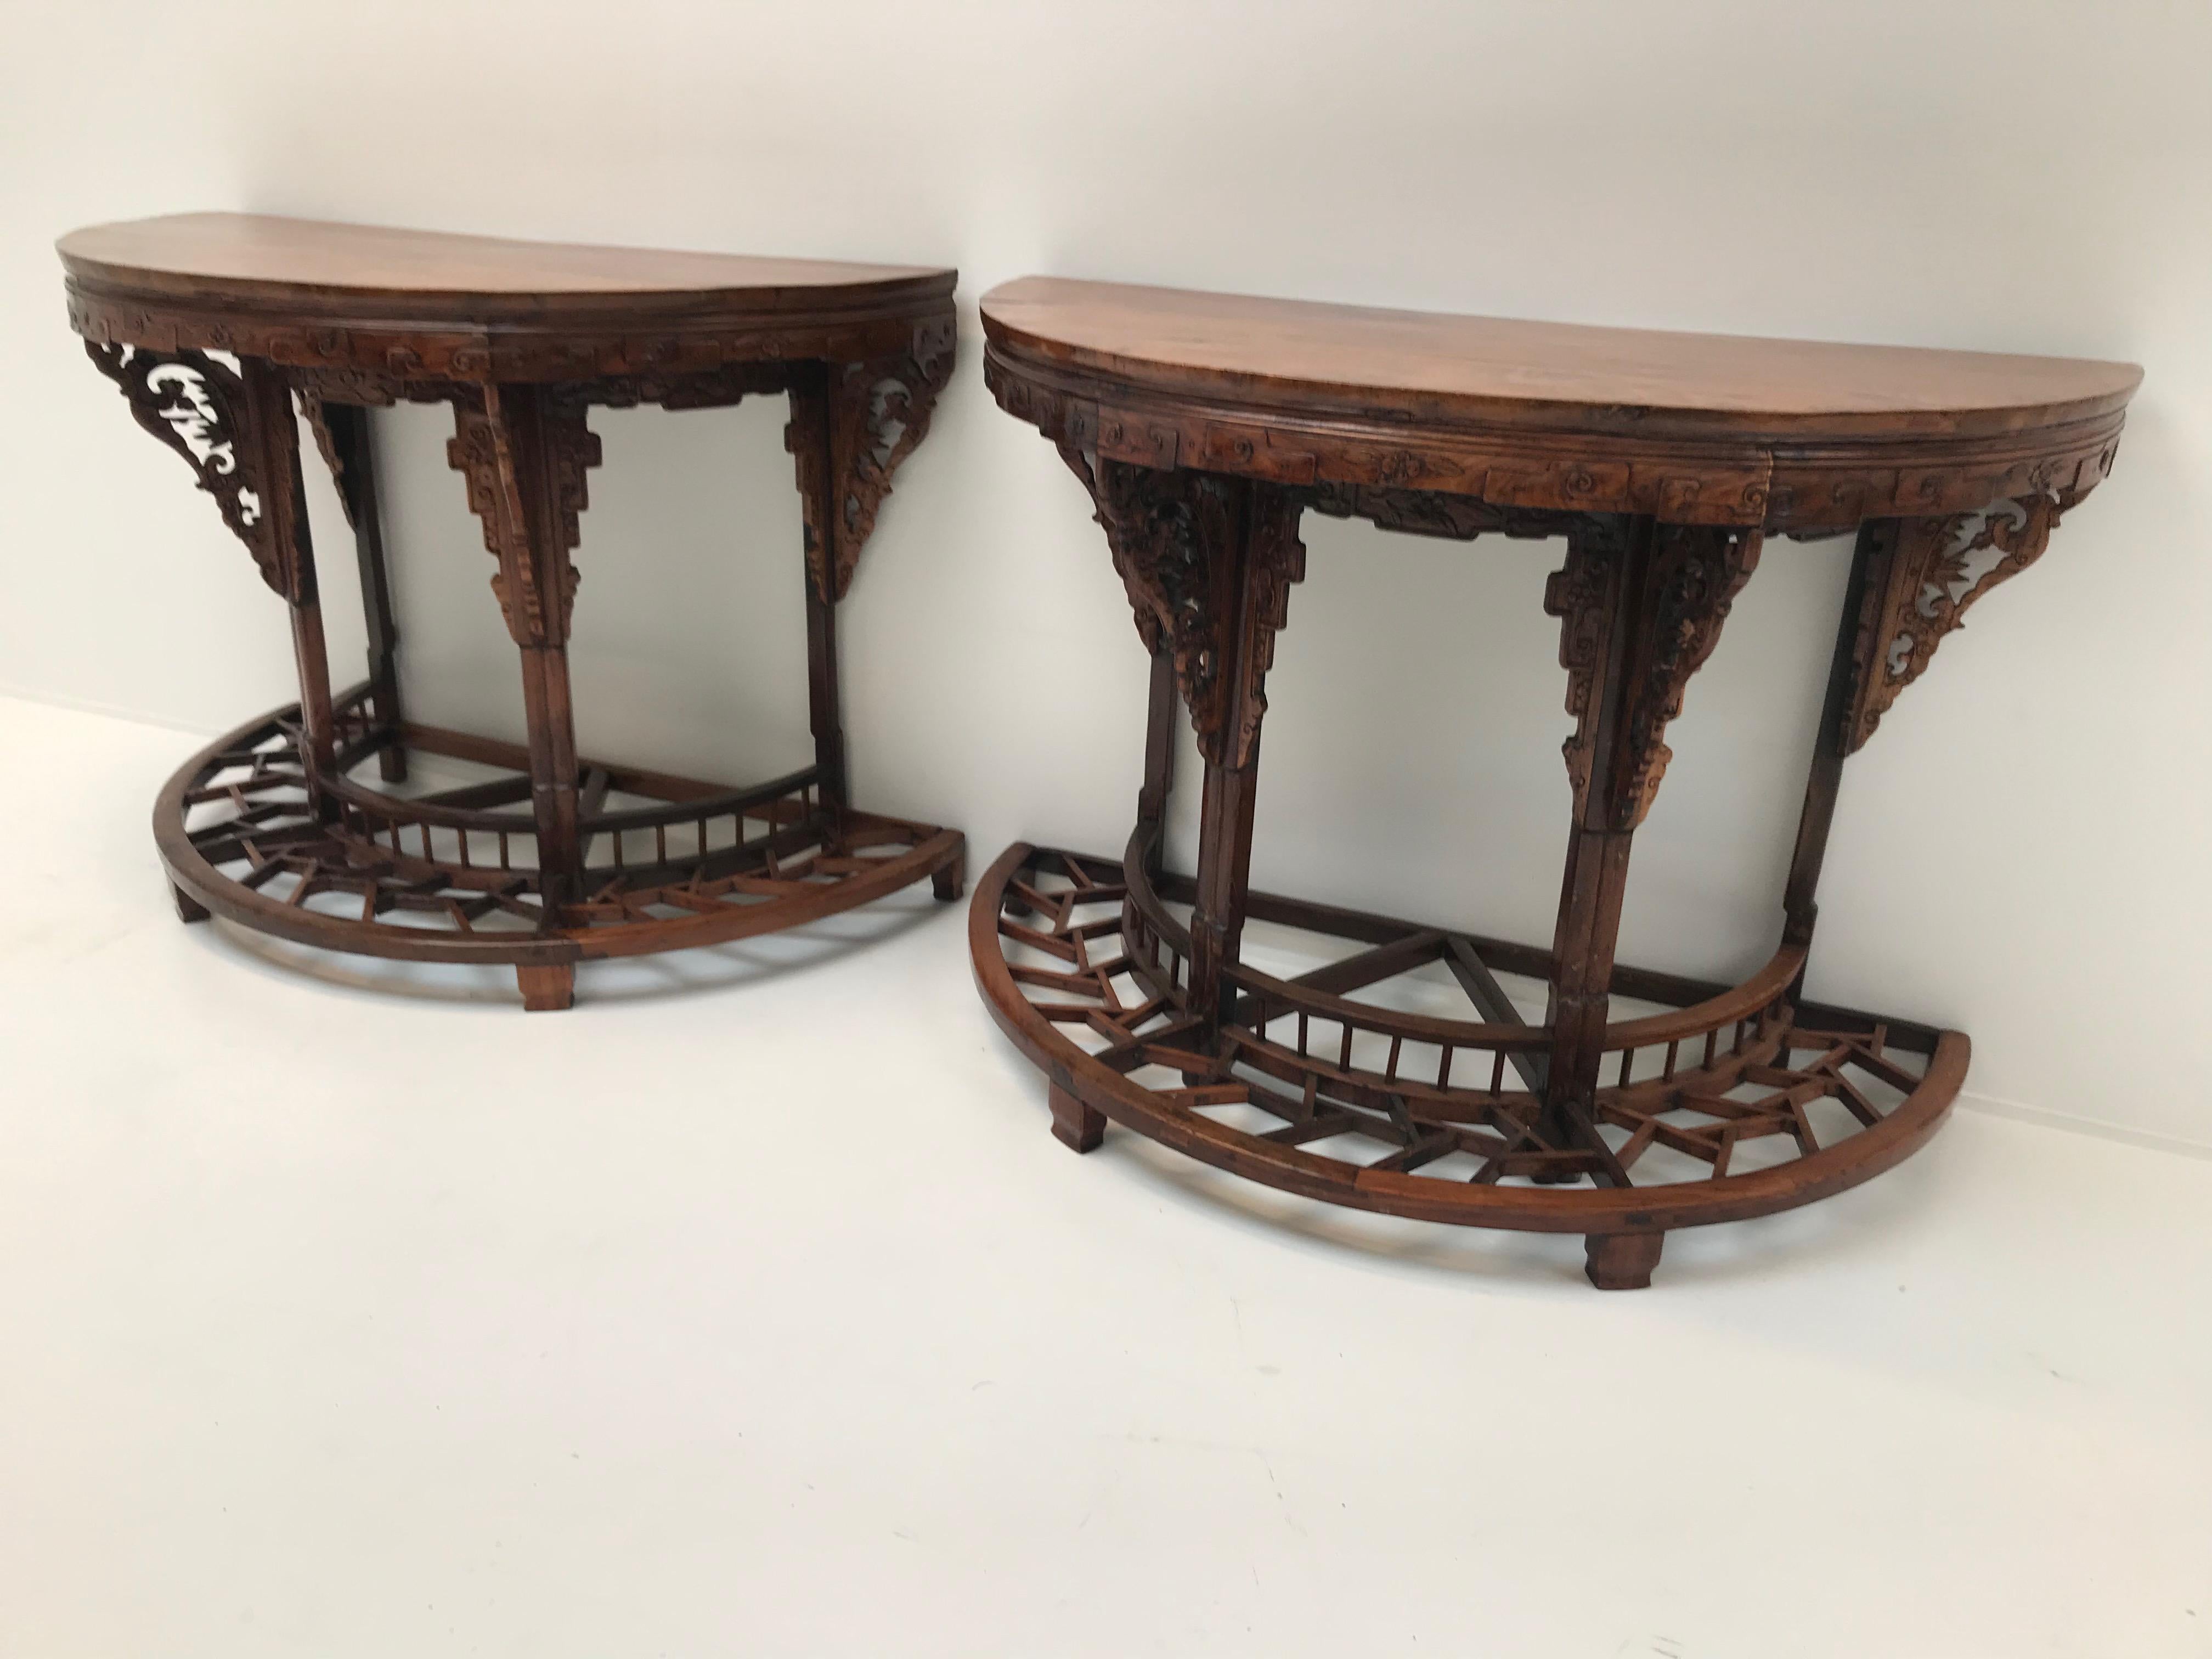 Exceptionnelle paire de consoles chinoises en bois d'elmwood
Peut également être combinée comme une table ronde
Très beau travail de sculpture
Ils sont parfaits comme consoles mais aussi comme table centrale.
 